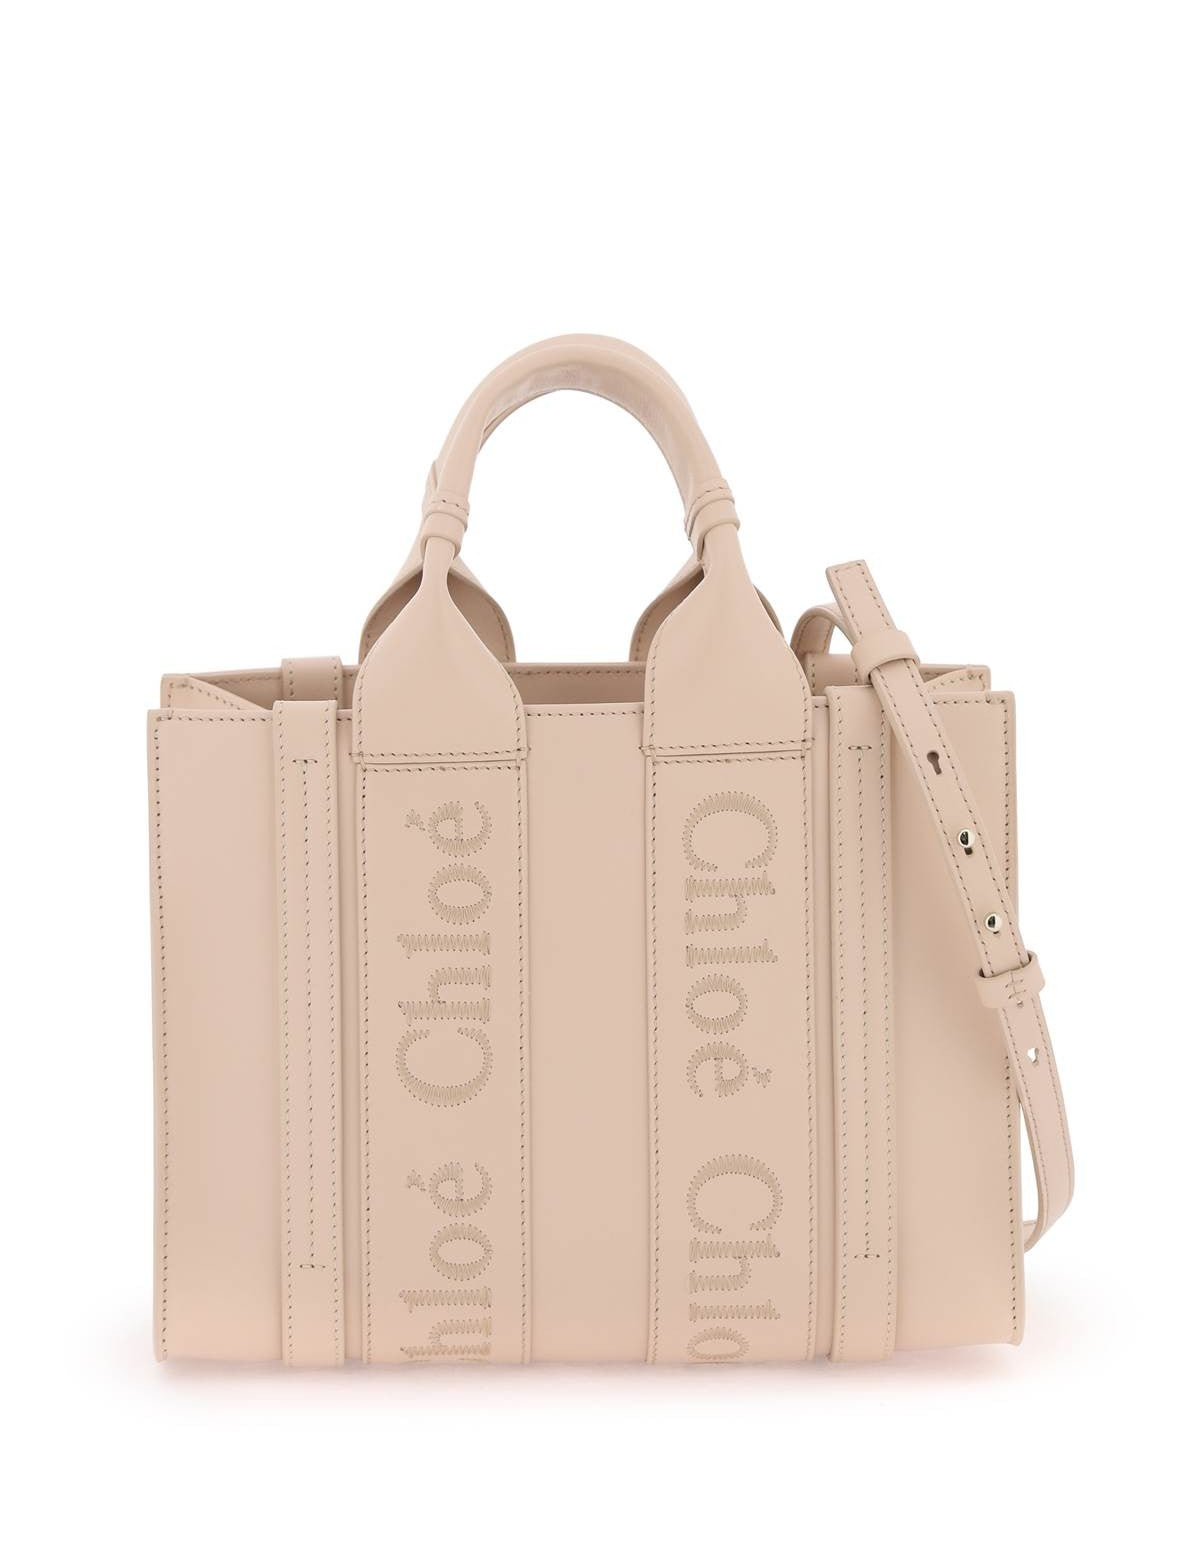 chloe-woody-leather-tote-bag.jpg